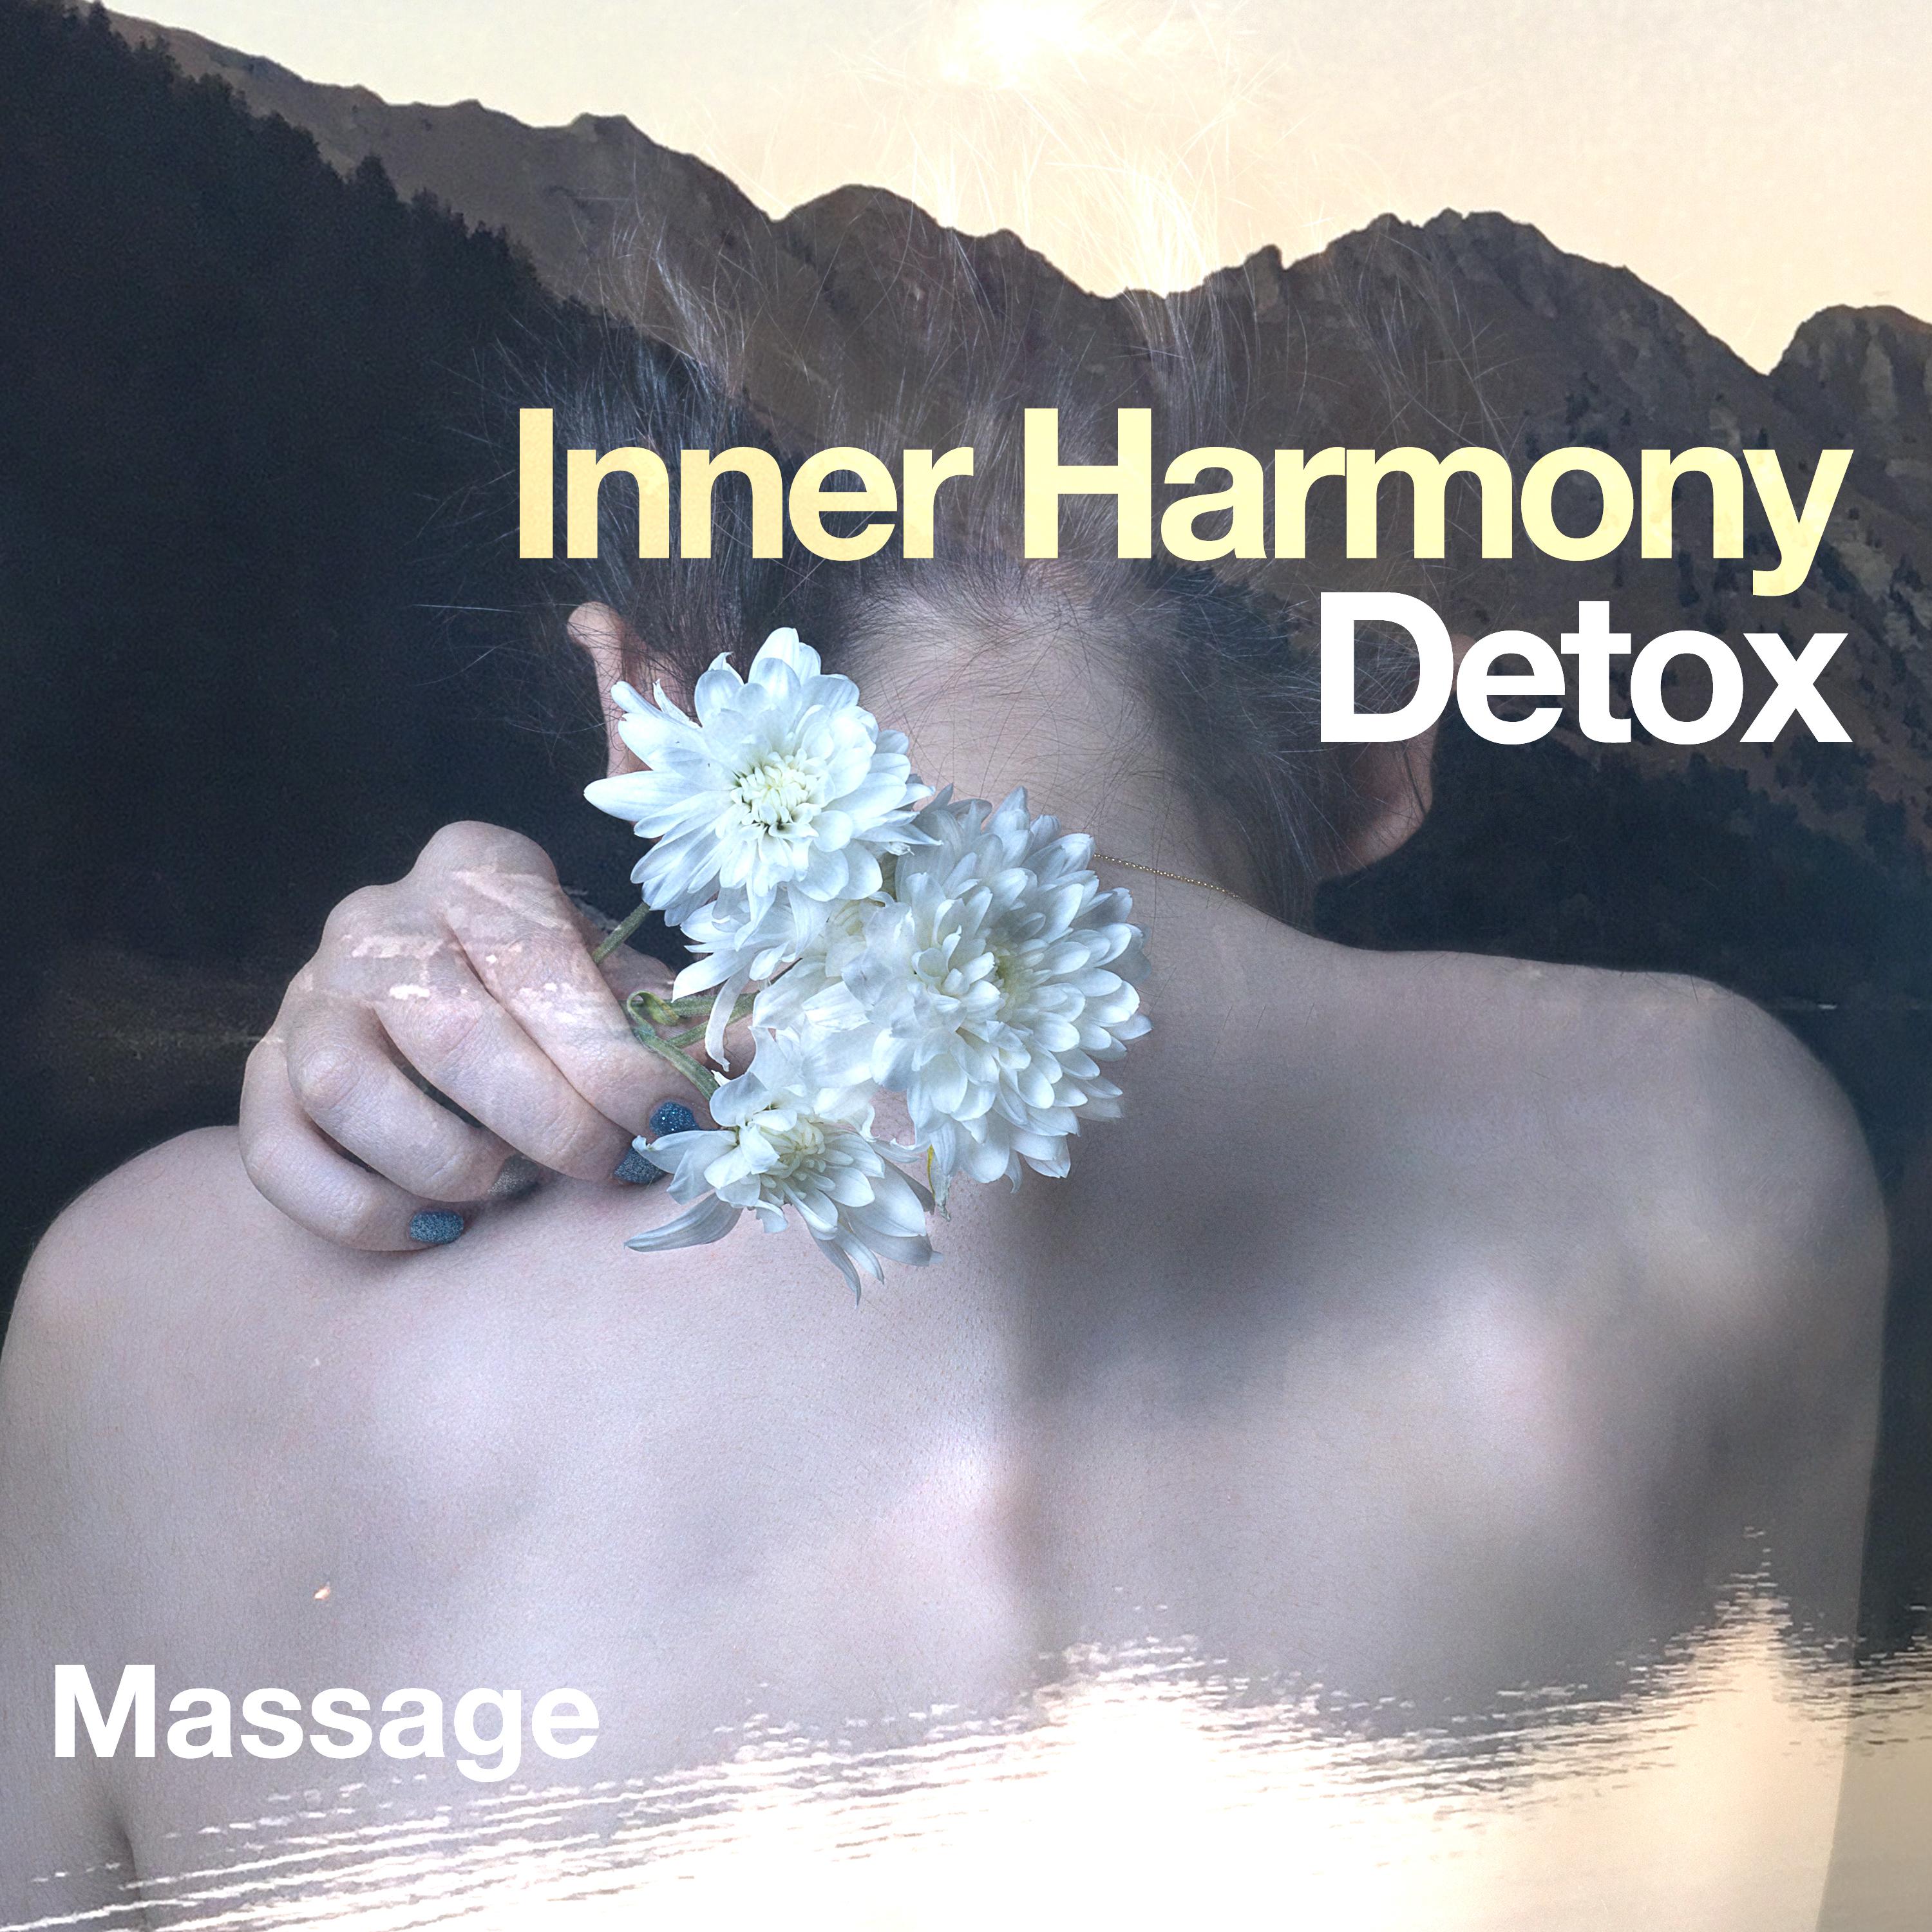 Inner Harmony Detox